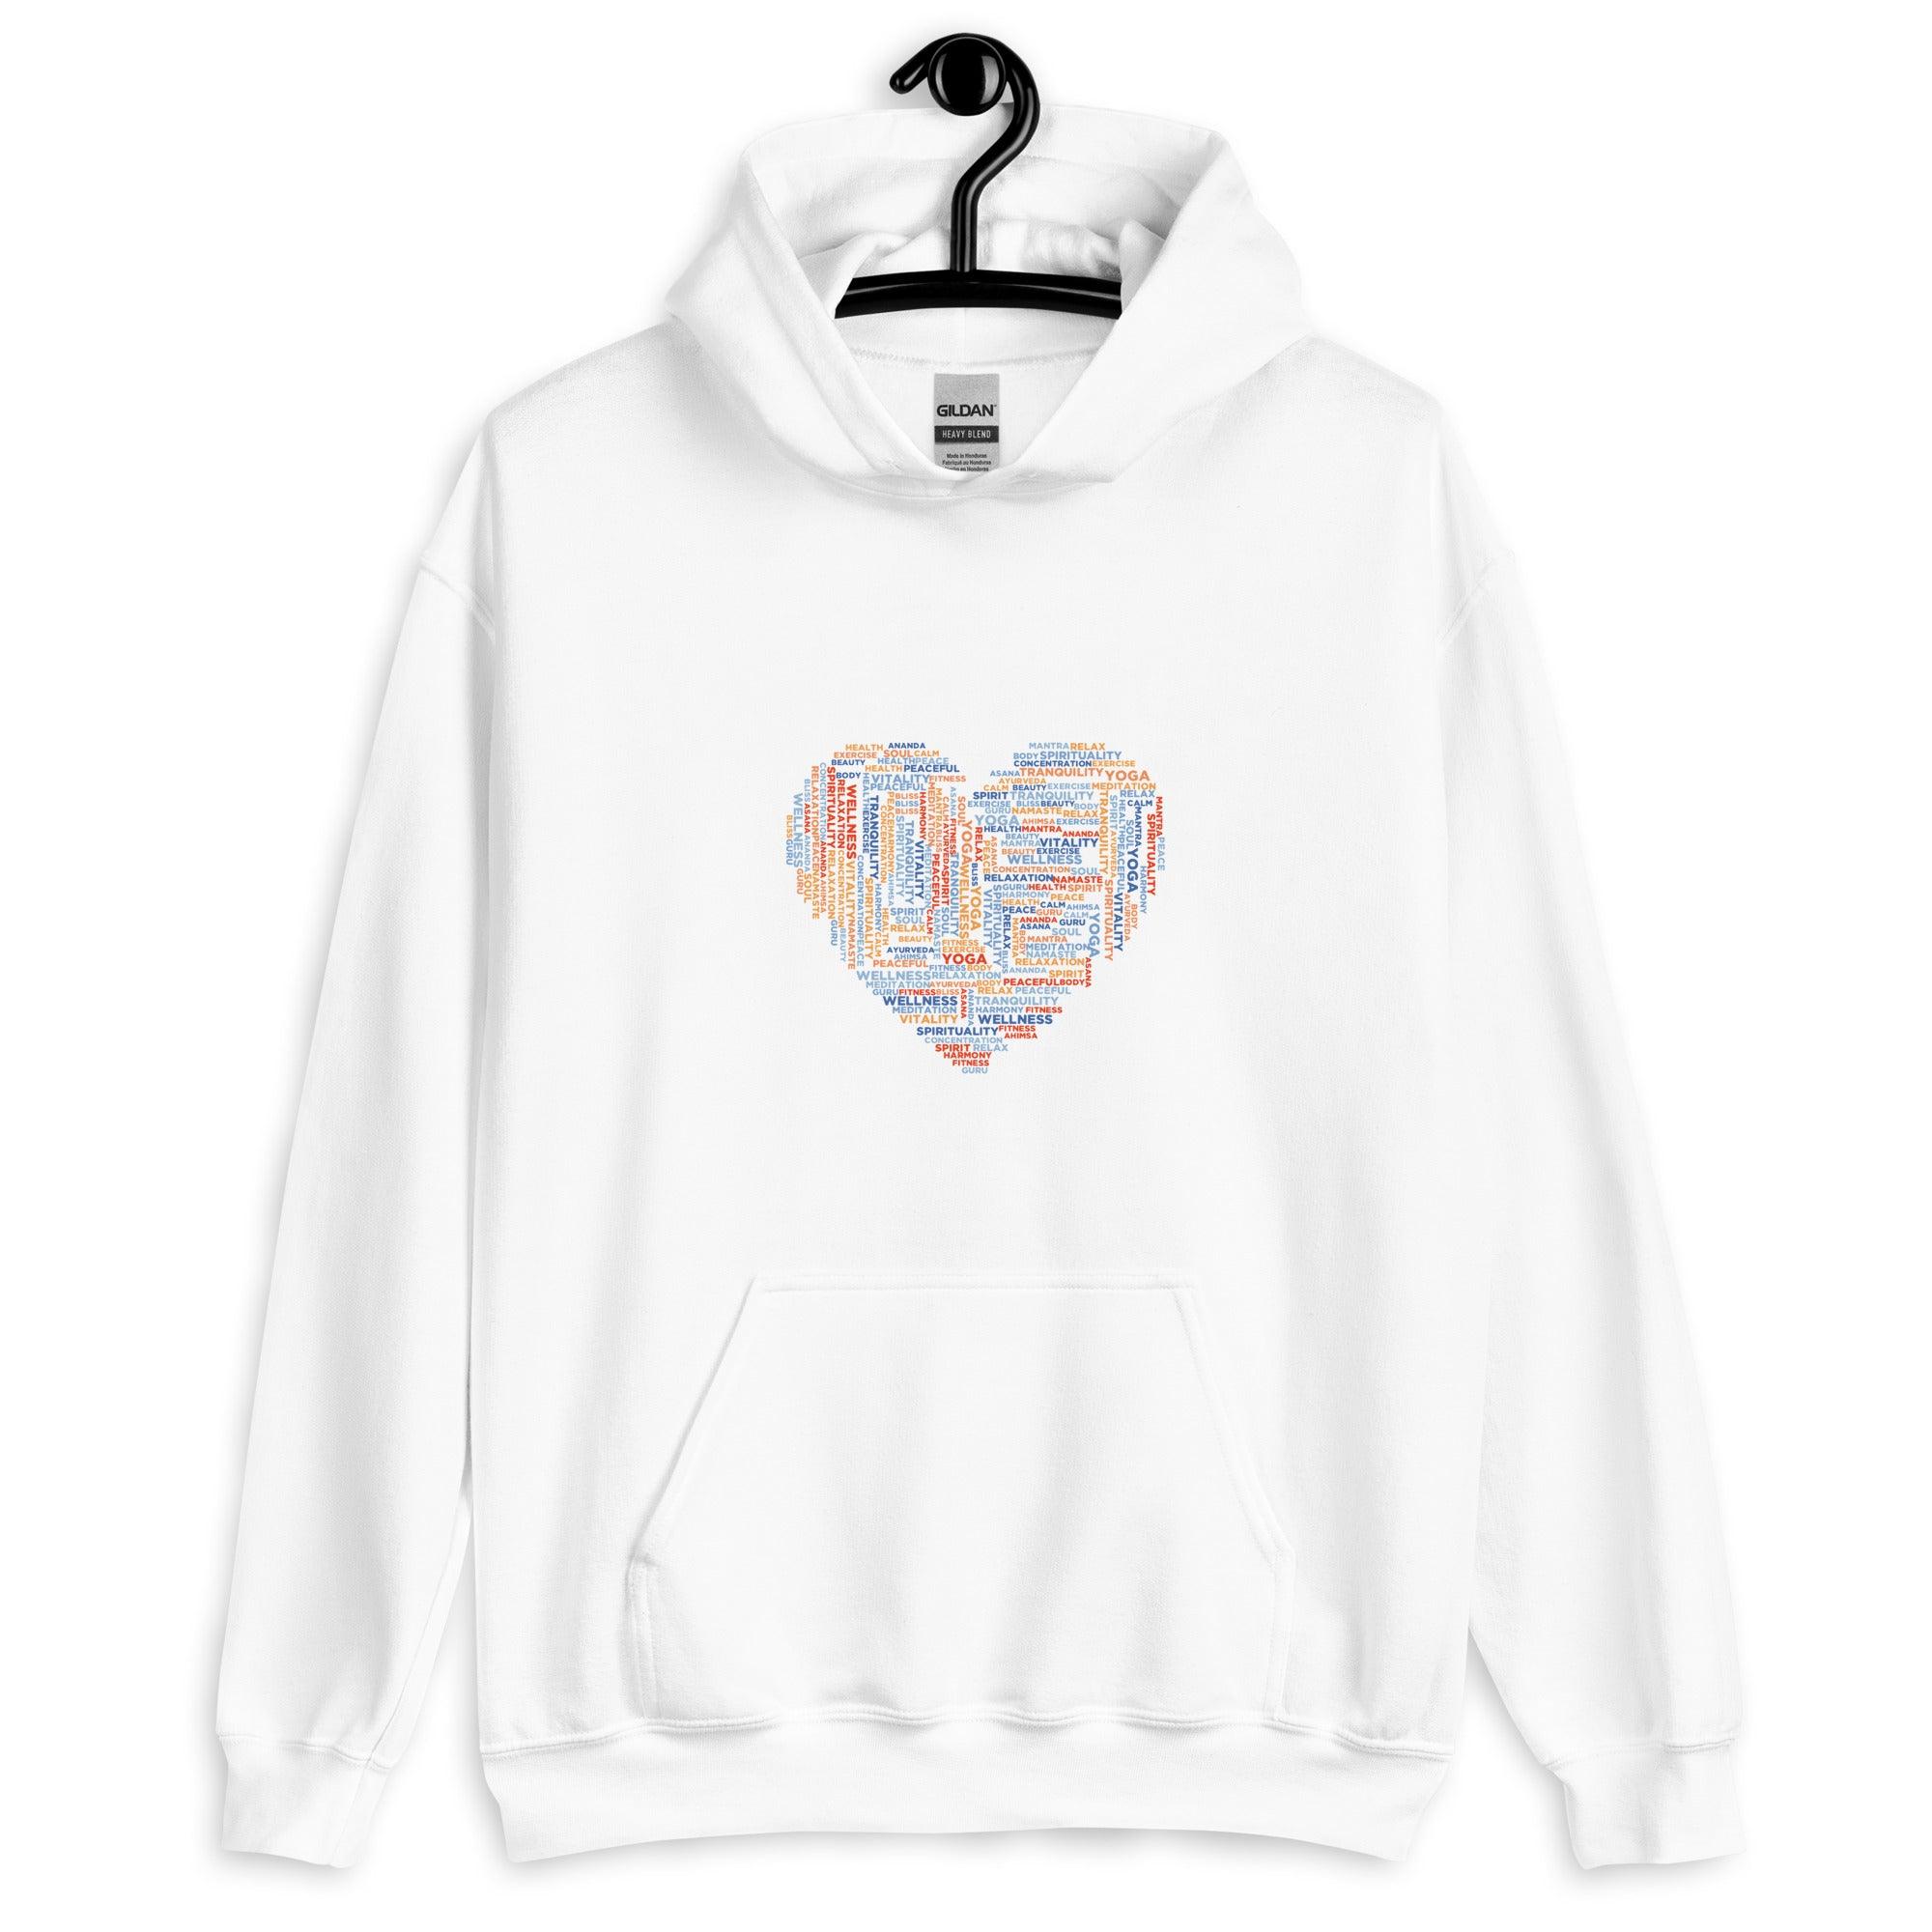 Sweatshirt com Capuz Unisexo Coração - My dear oraculo store